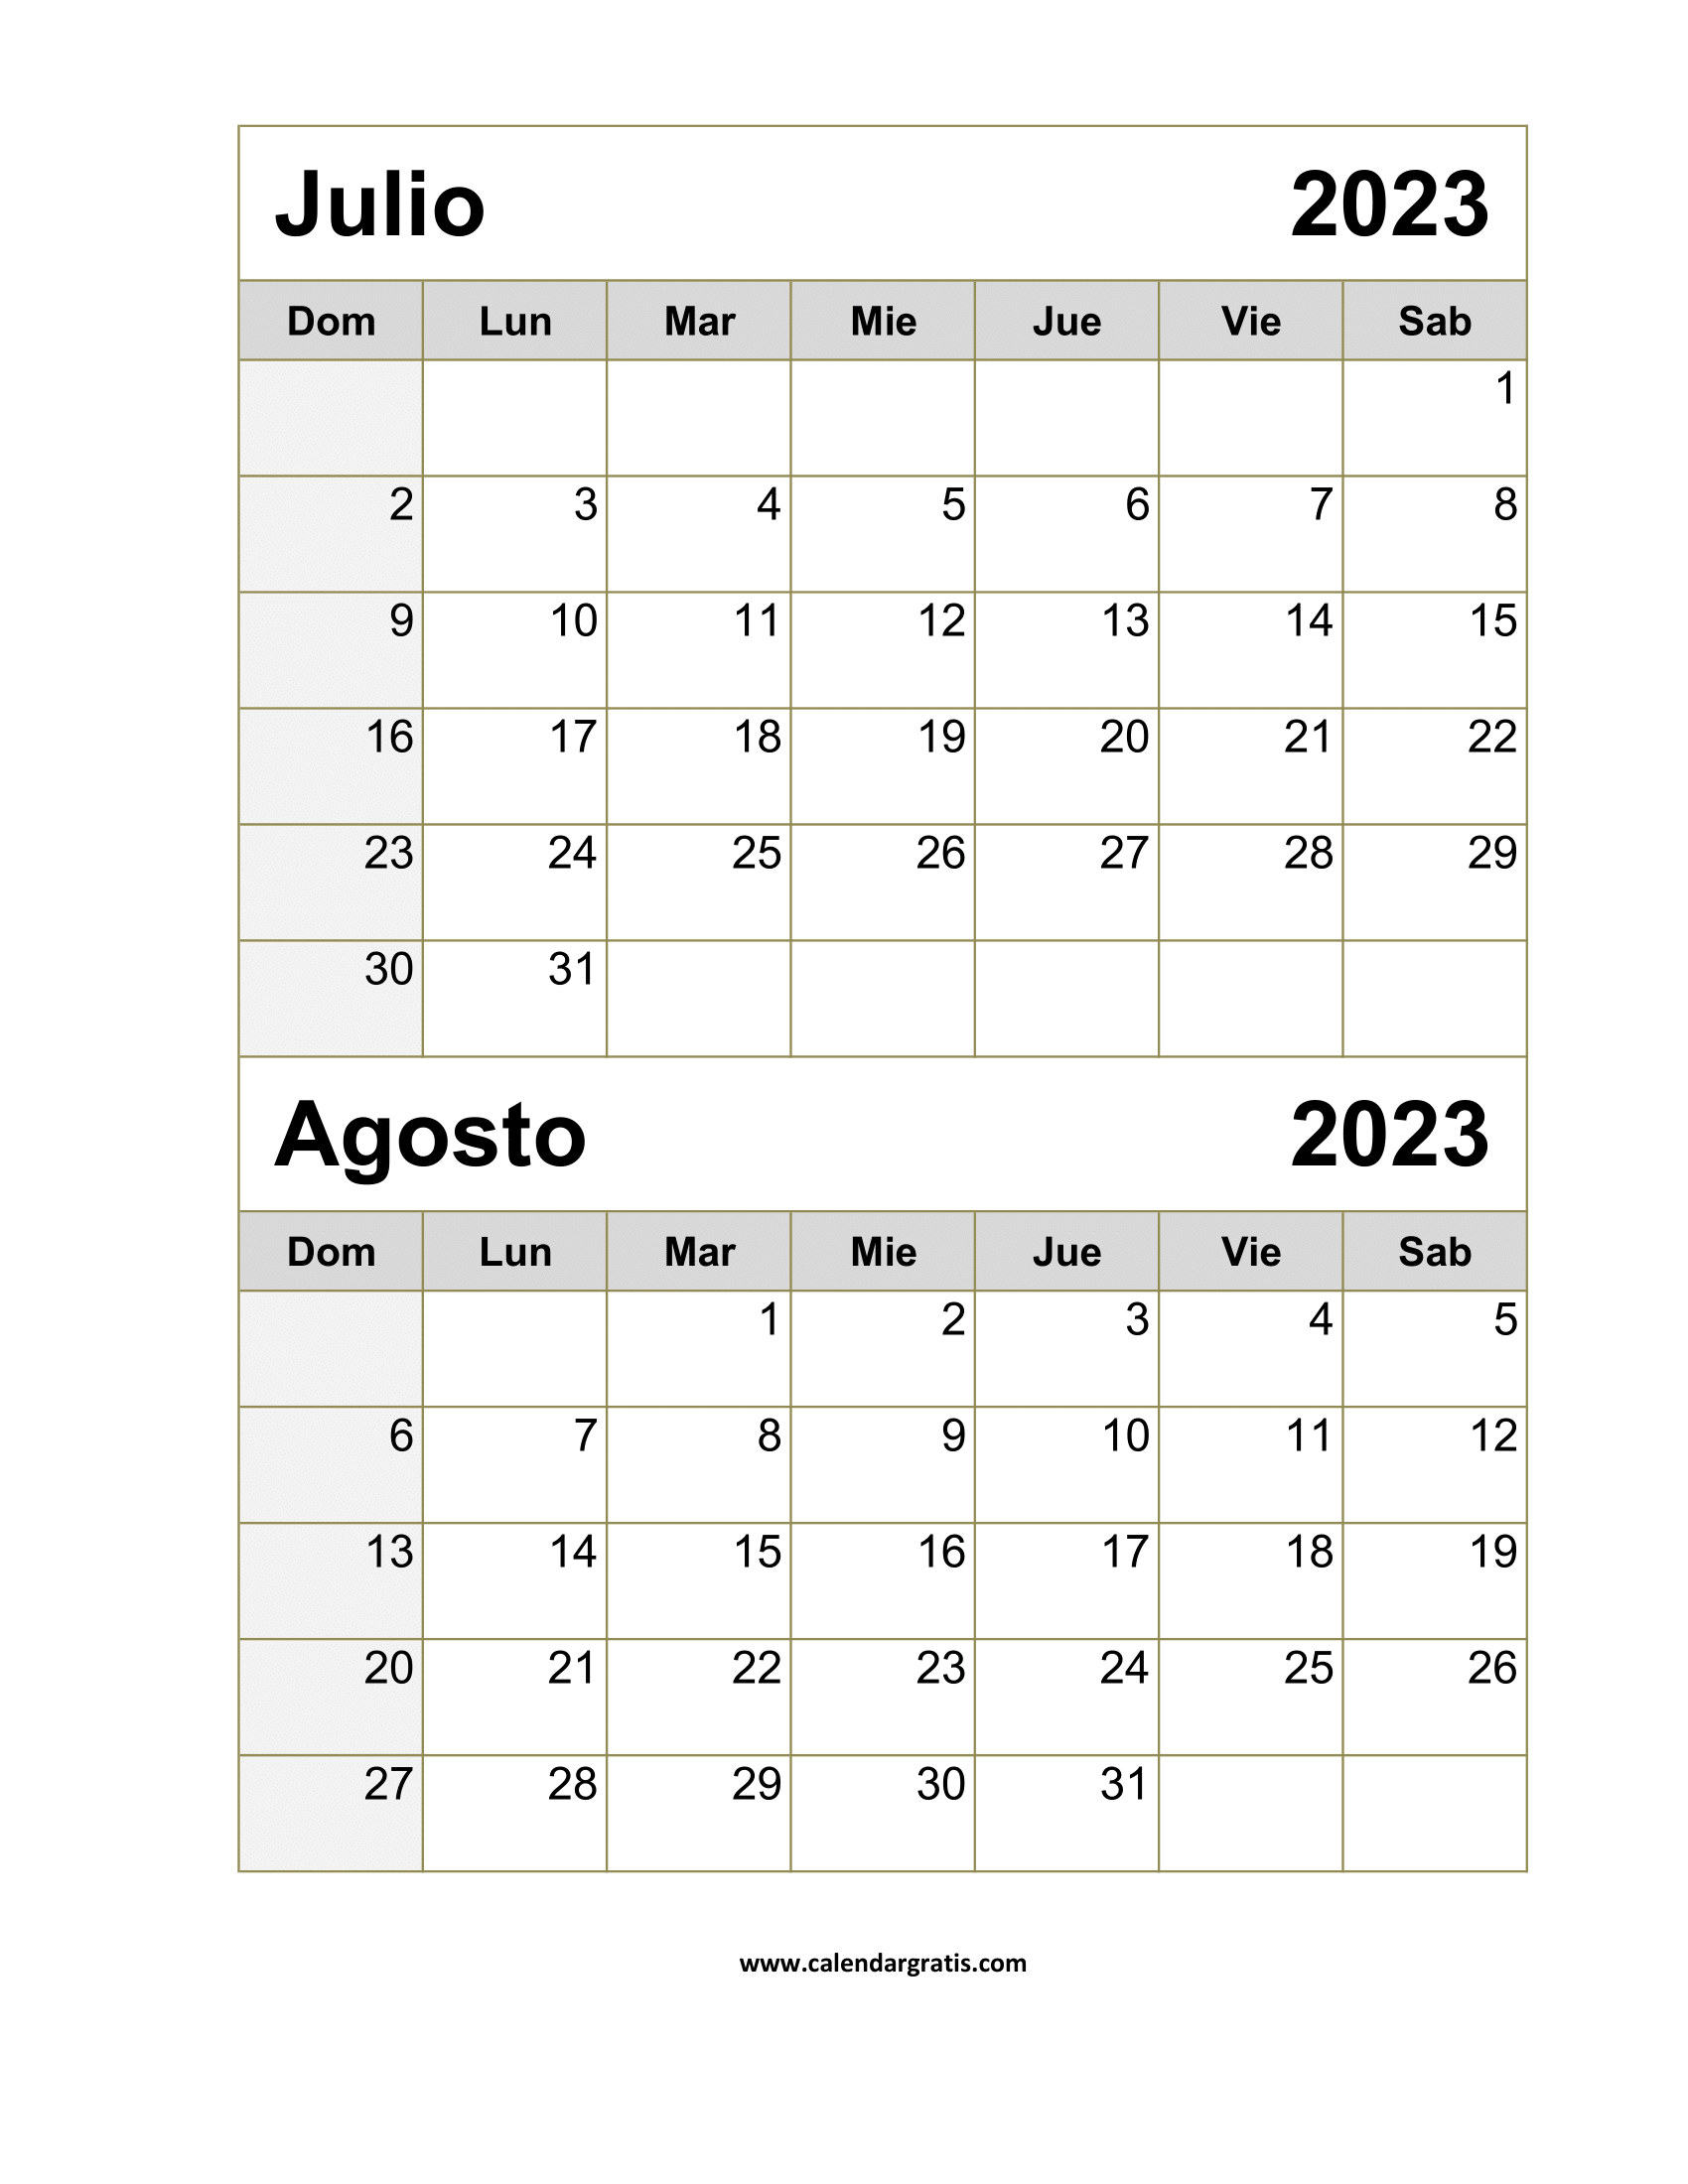 Descarga el Calendario Vertical Julio-Agosto 2023 para una visualización sencilla y eficaz de tus actividades y eventos en formato vertical.